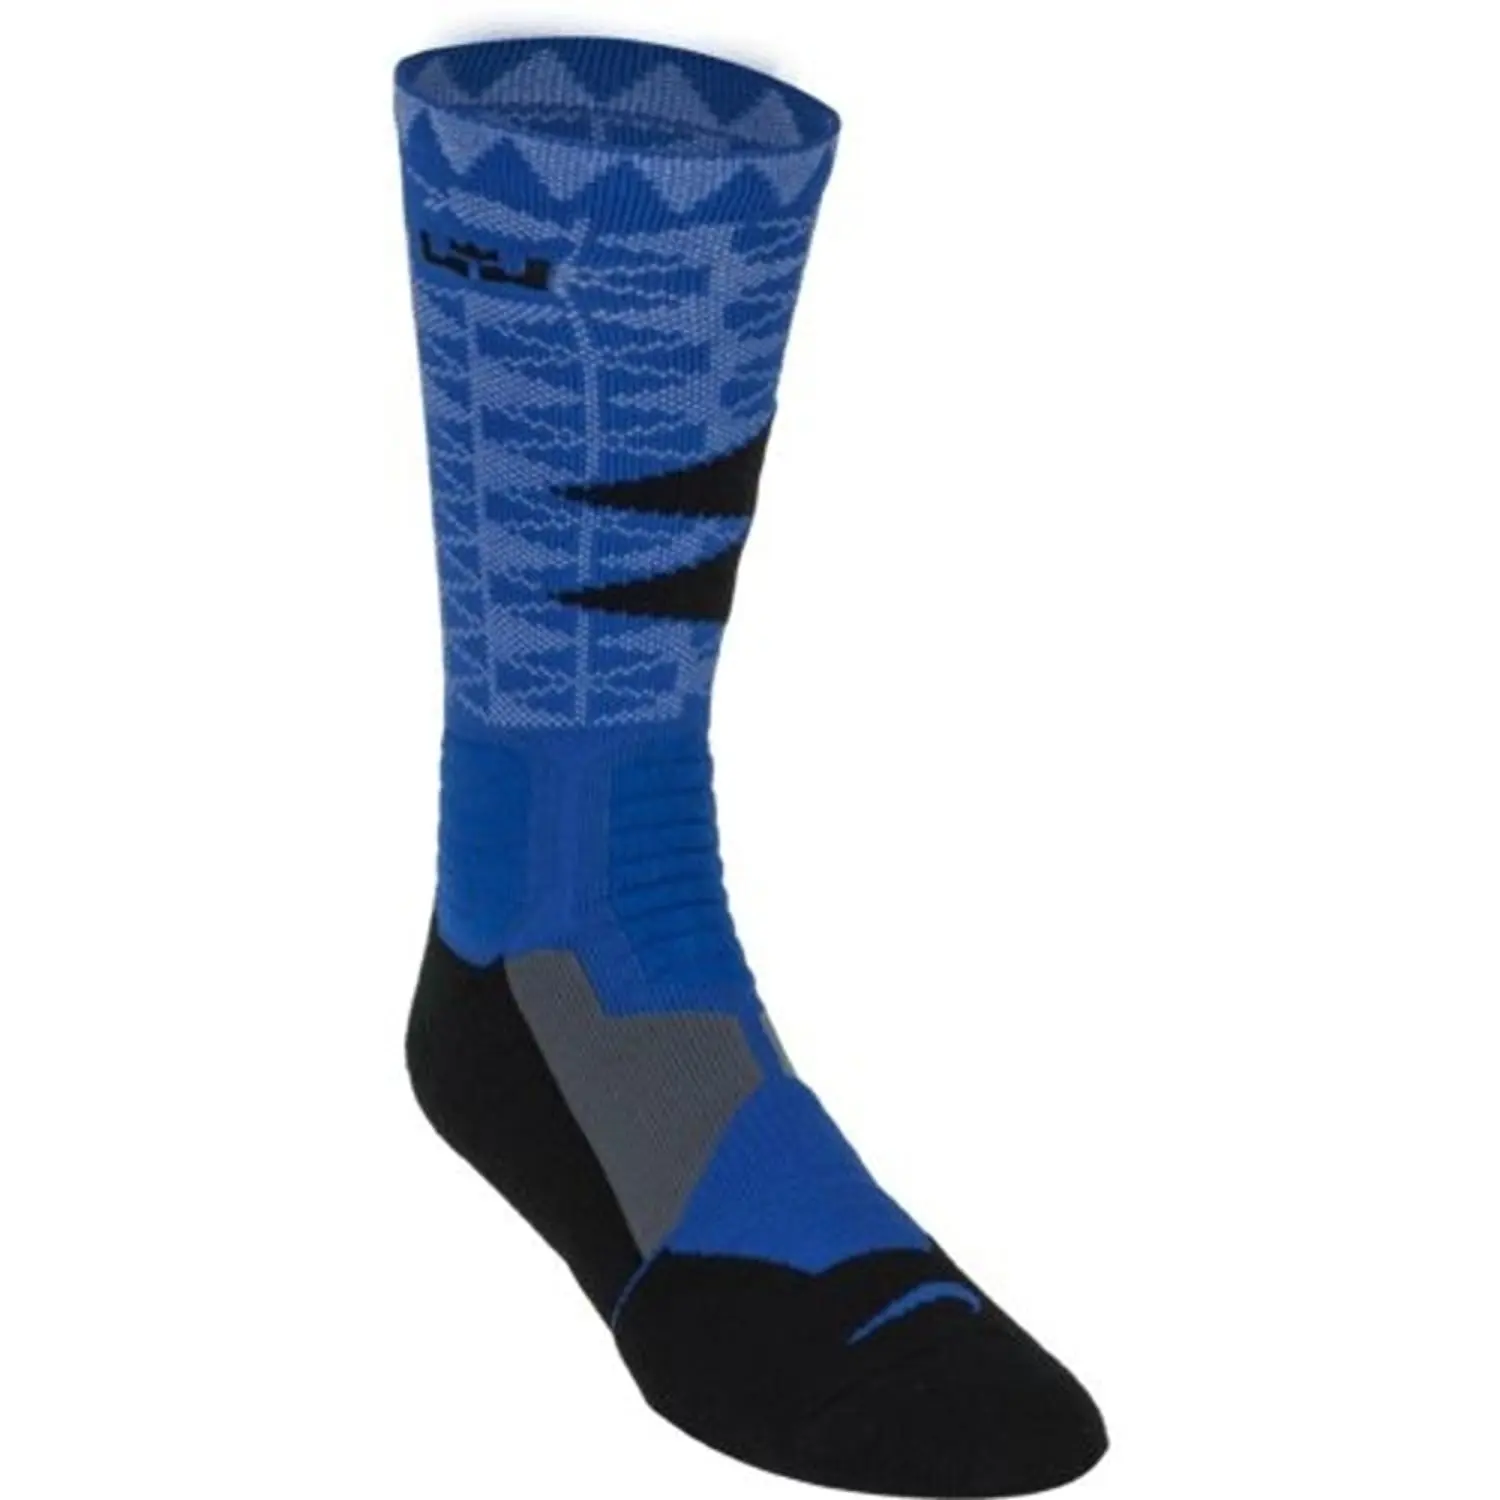 blue basketball socks